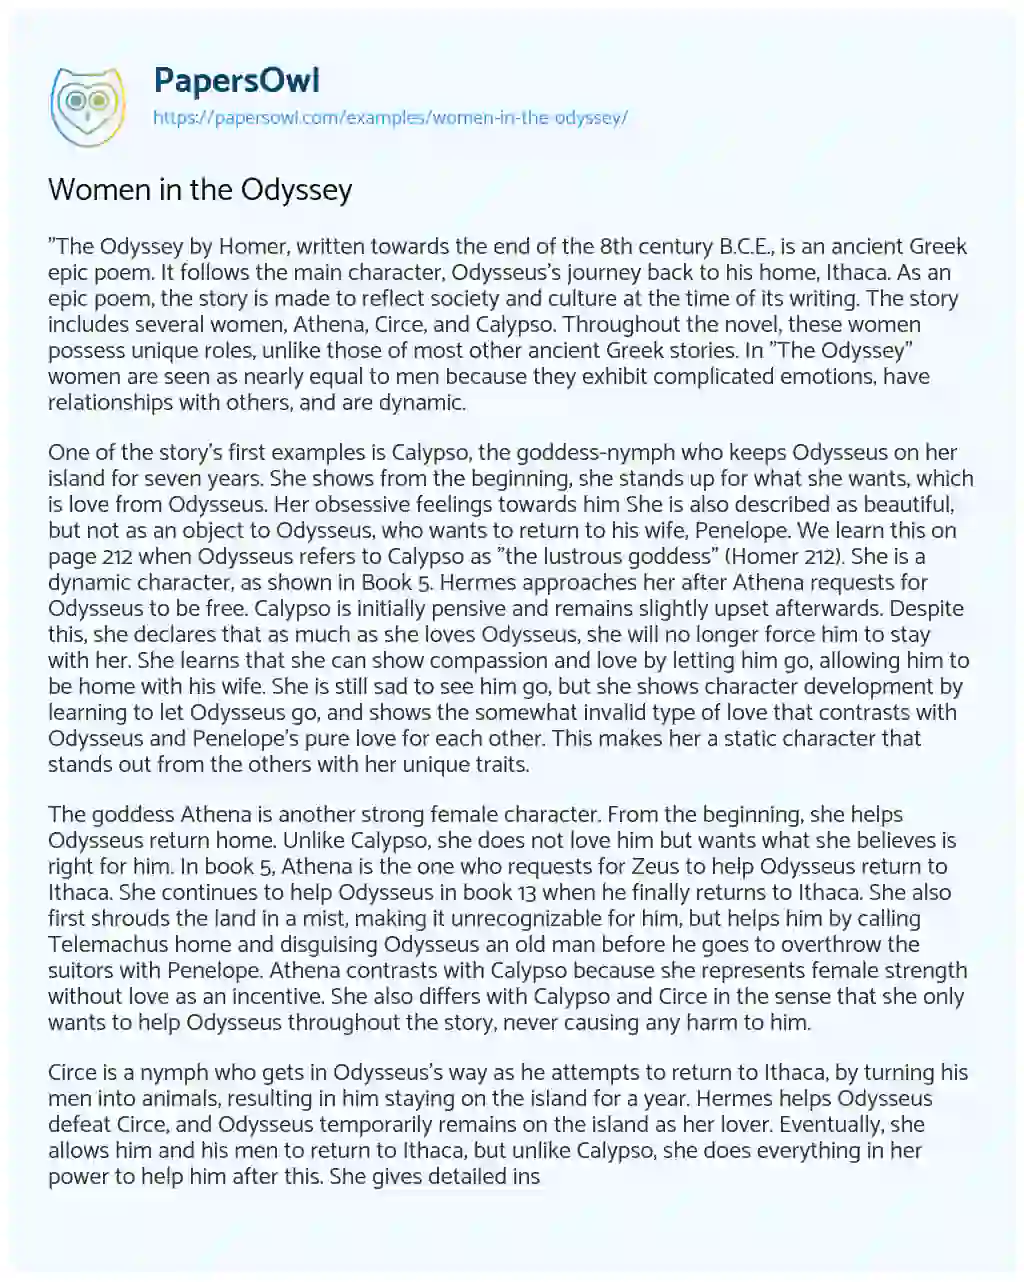 Women in the Odyssey essay